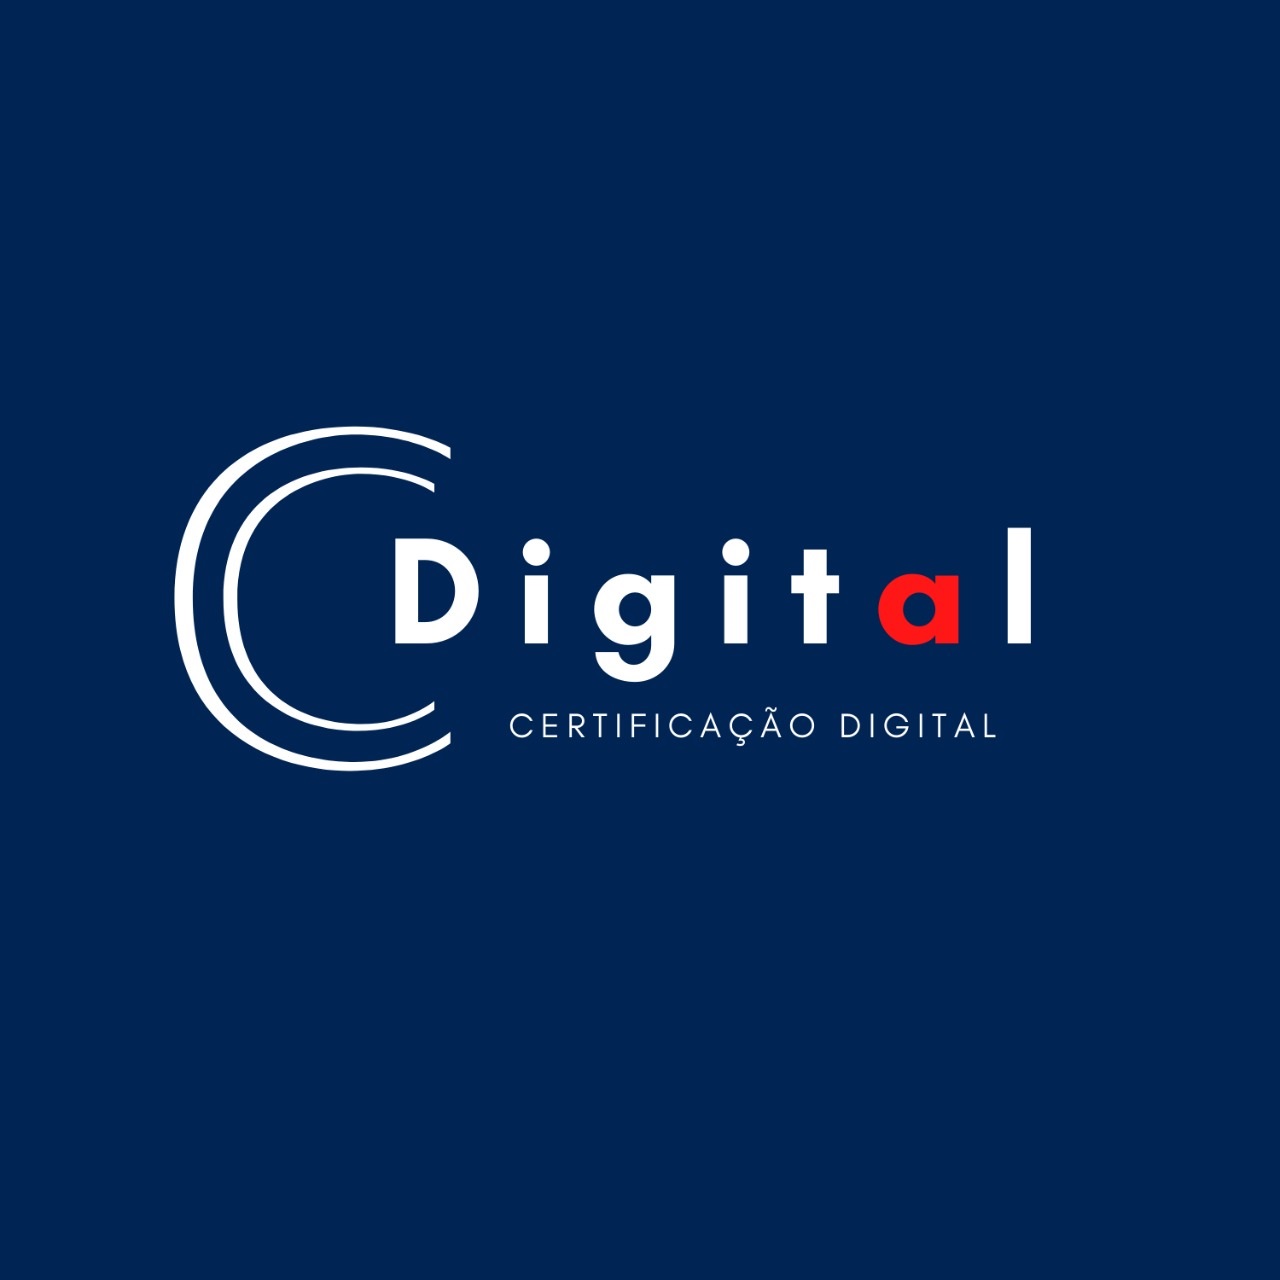 Logotipo do parceiro AR Cdigital &#8211; RHEDECONT Assessoria Contábil e Empresarial &#8211; 15%